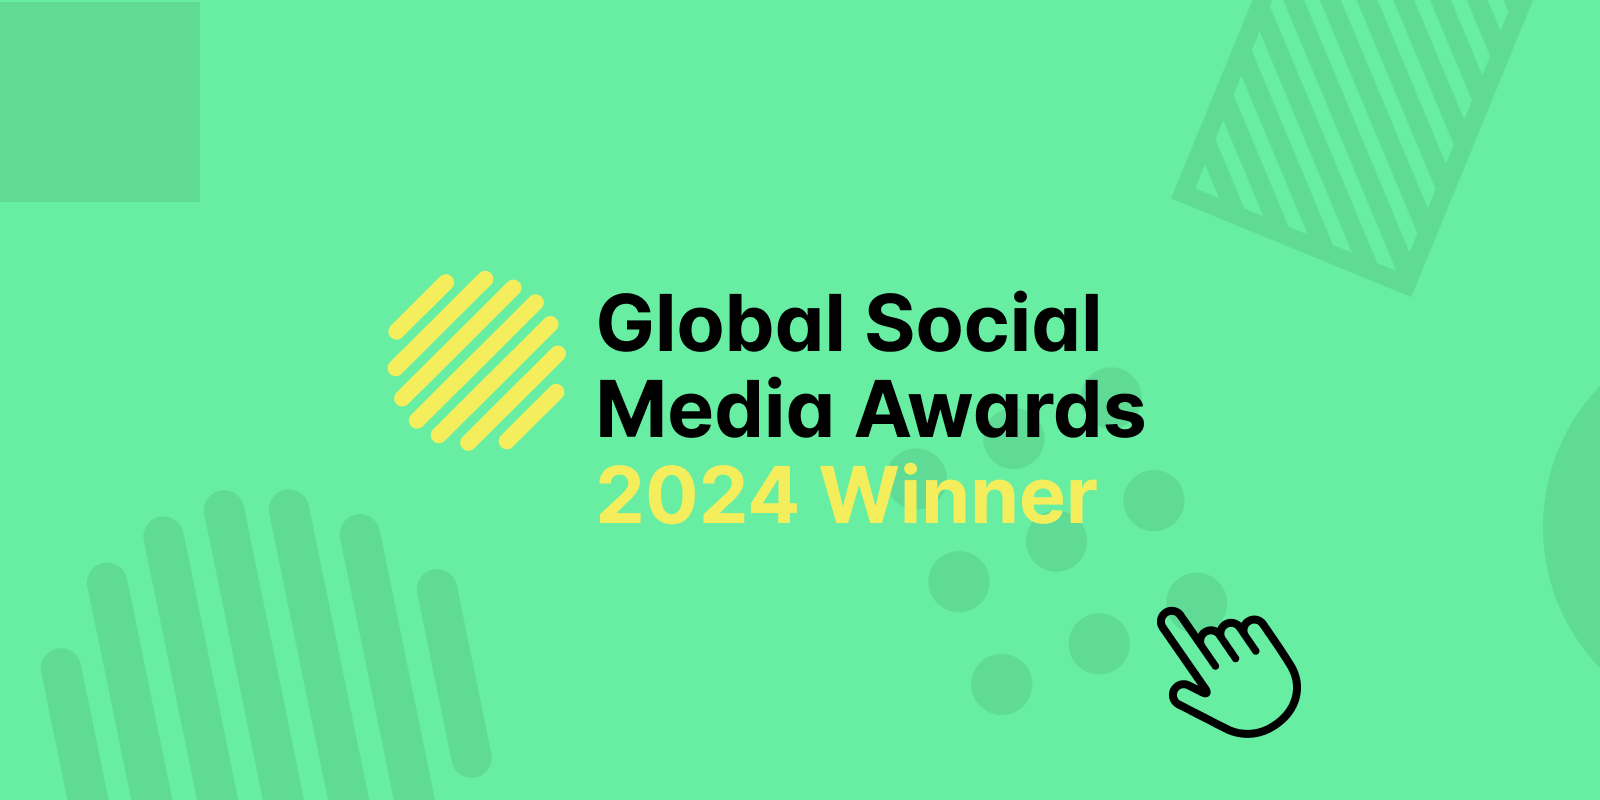 Global Social Media Awards 2024 Winner